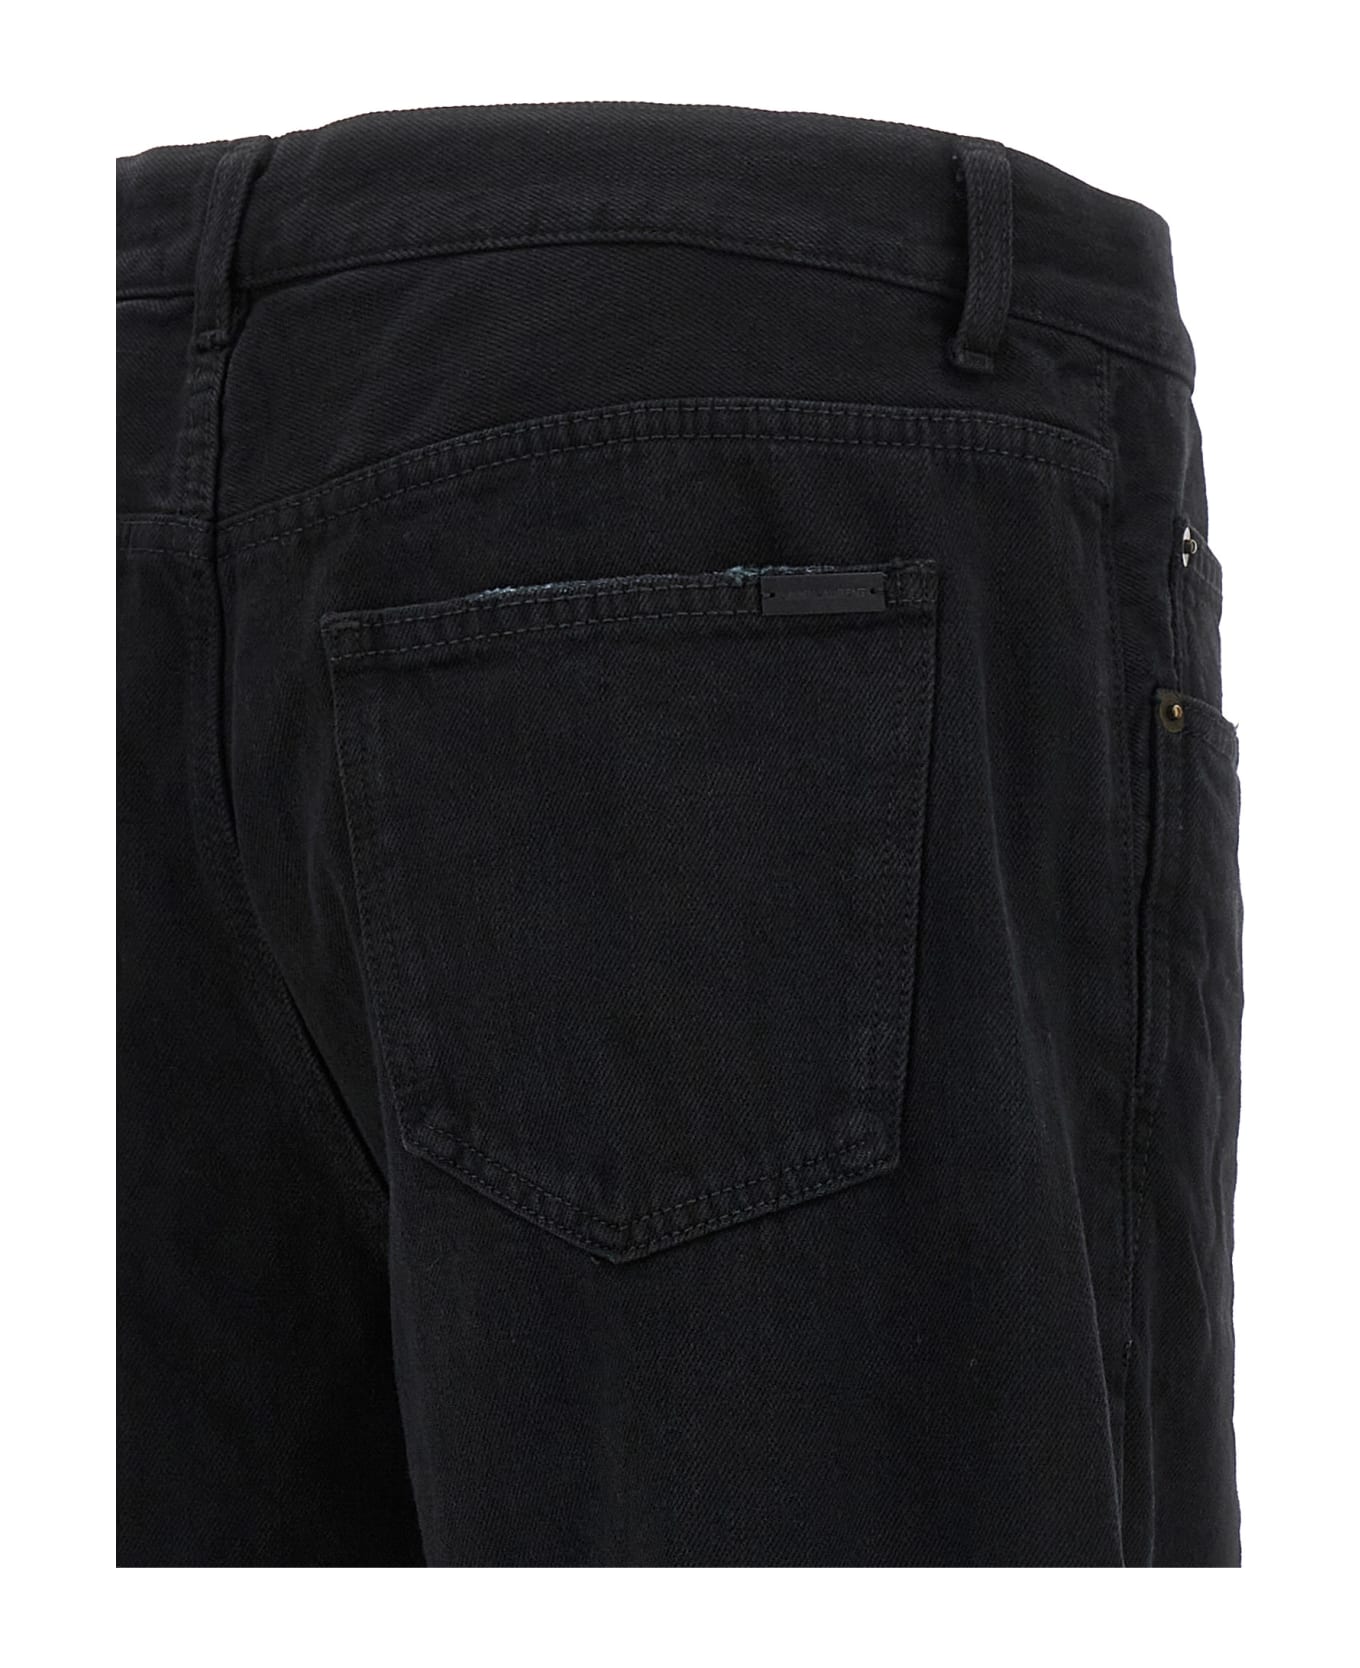 Saint Laurent Extreme Baggy Jeans - CARBON BLACK